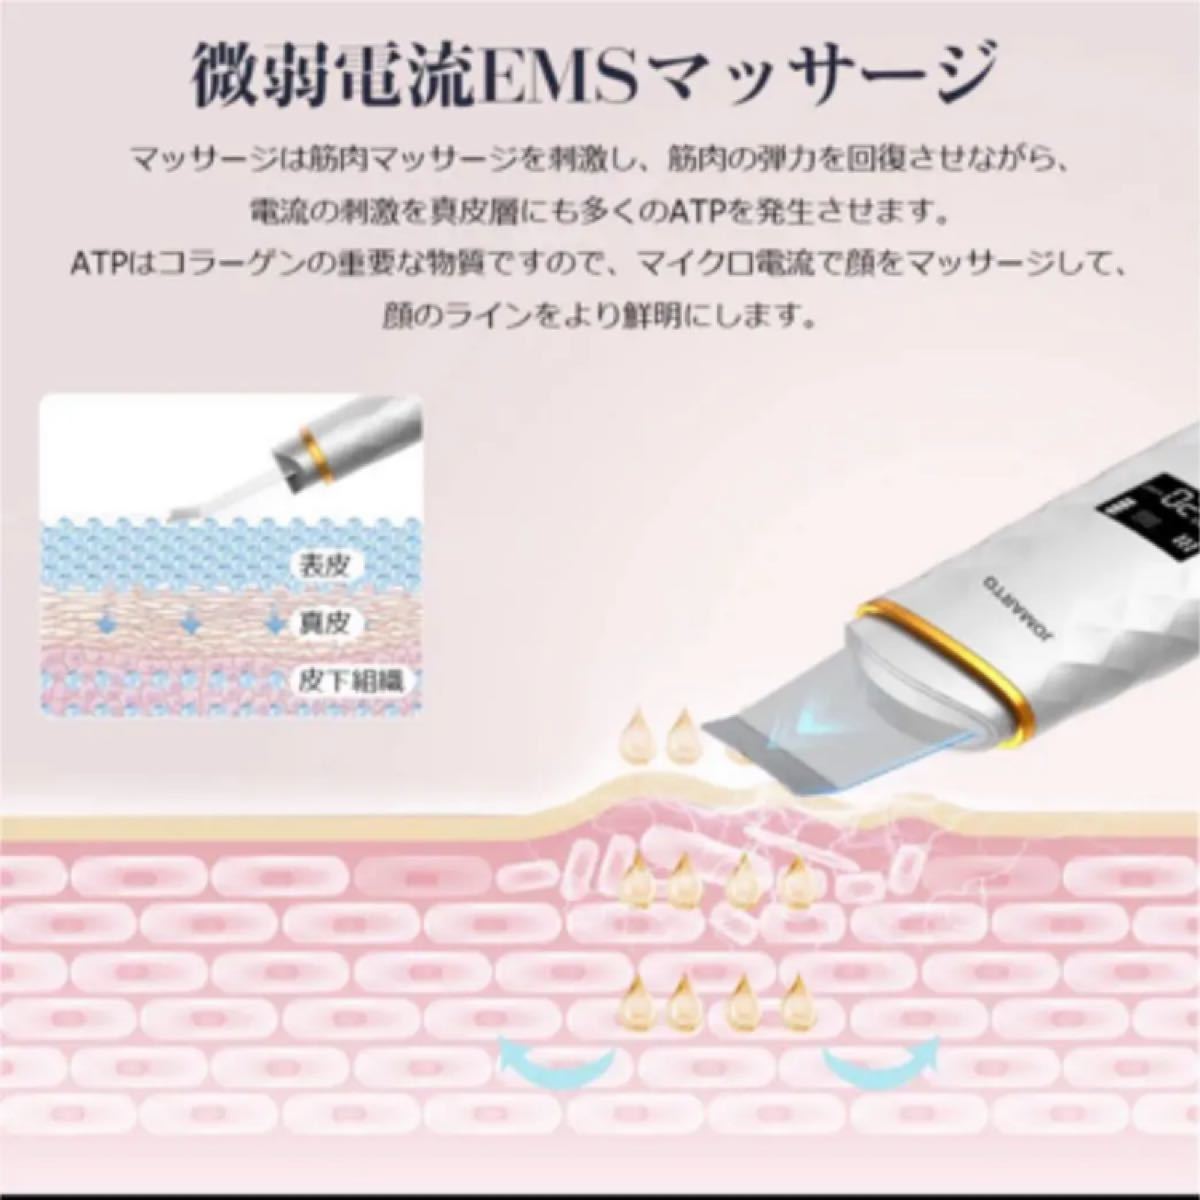 ウォーターピーリング 液晶ディスプレイ 超音波 ピーリング 超音波美顔器 USB充電 スマートピール 毛穴ウォータークリーン 